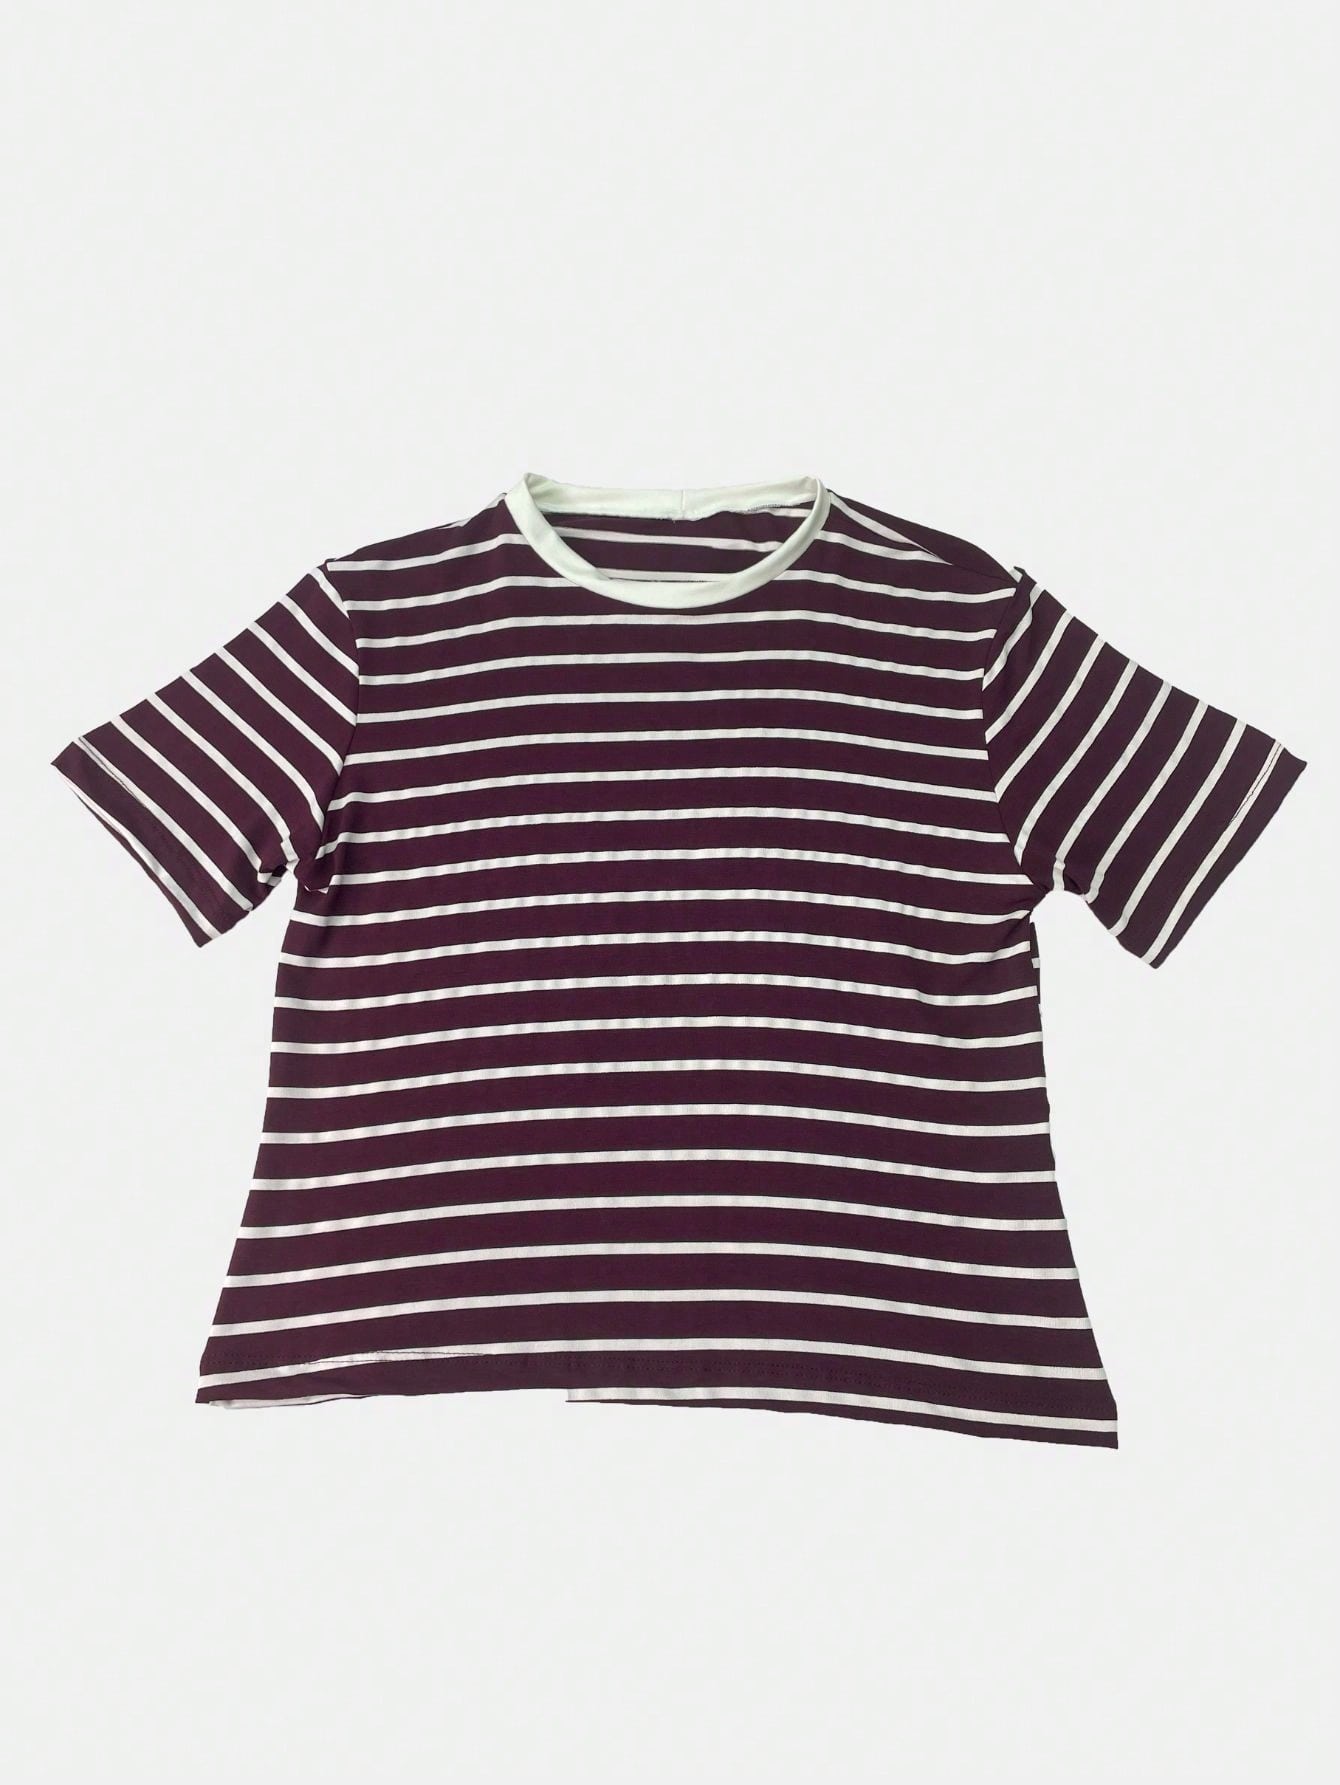 K&K FASHION  T-Shirt Blusa Basica Com Listras